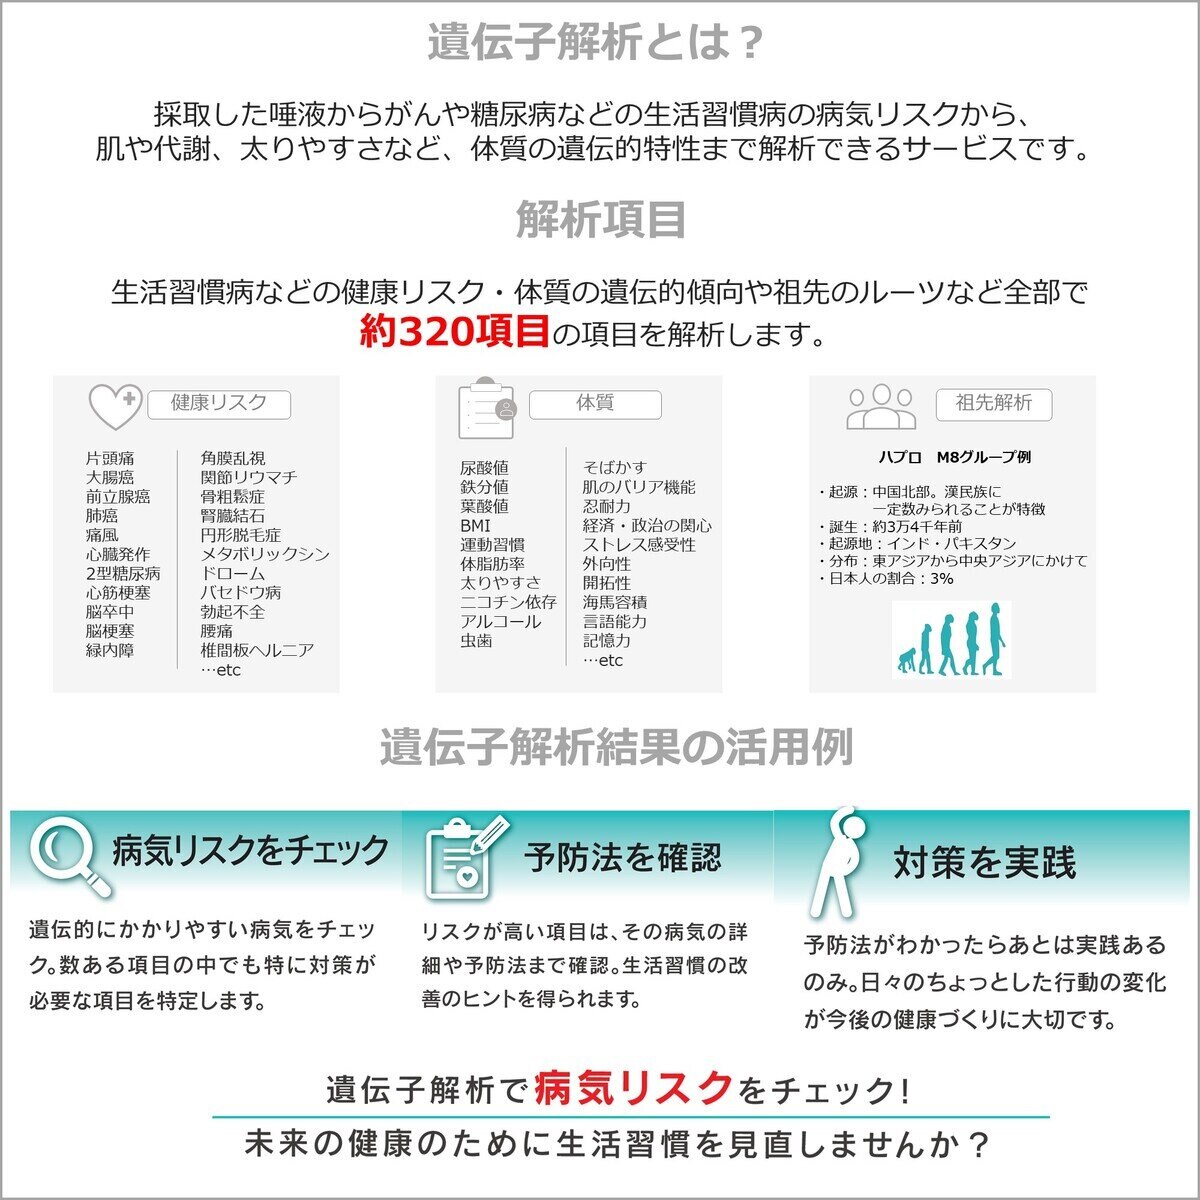 ユーグレナ マイヘルス 遺伝子解析サービス | Costco Japan